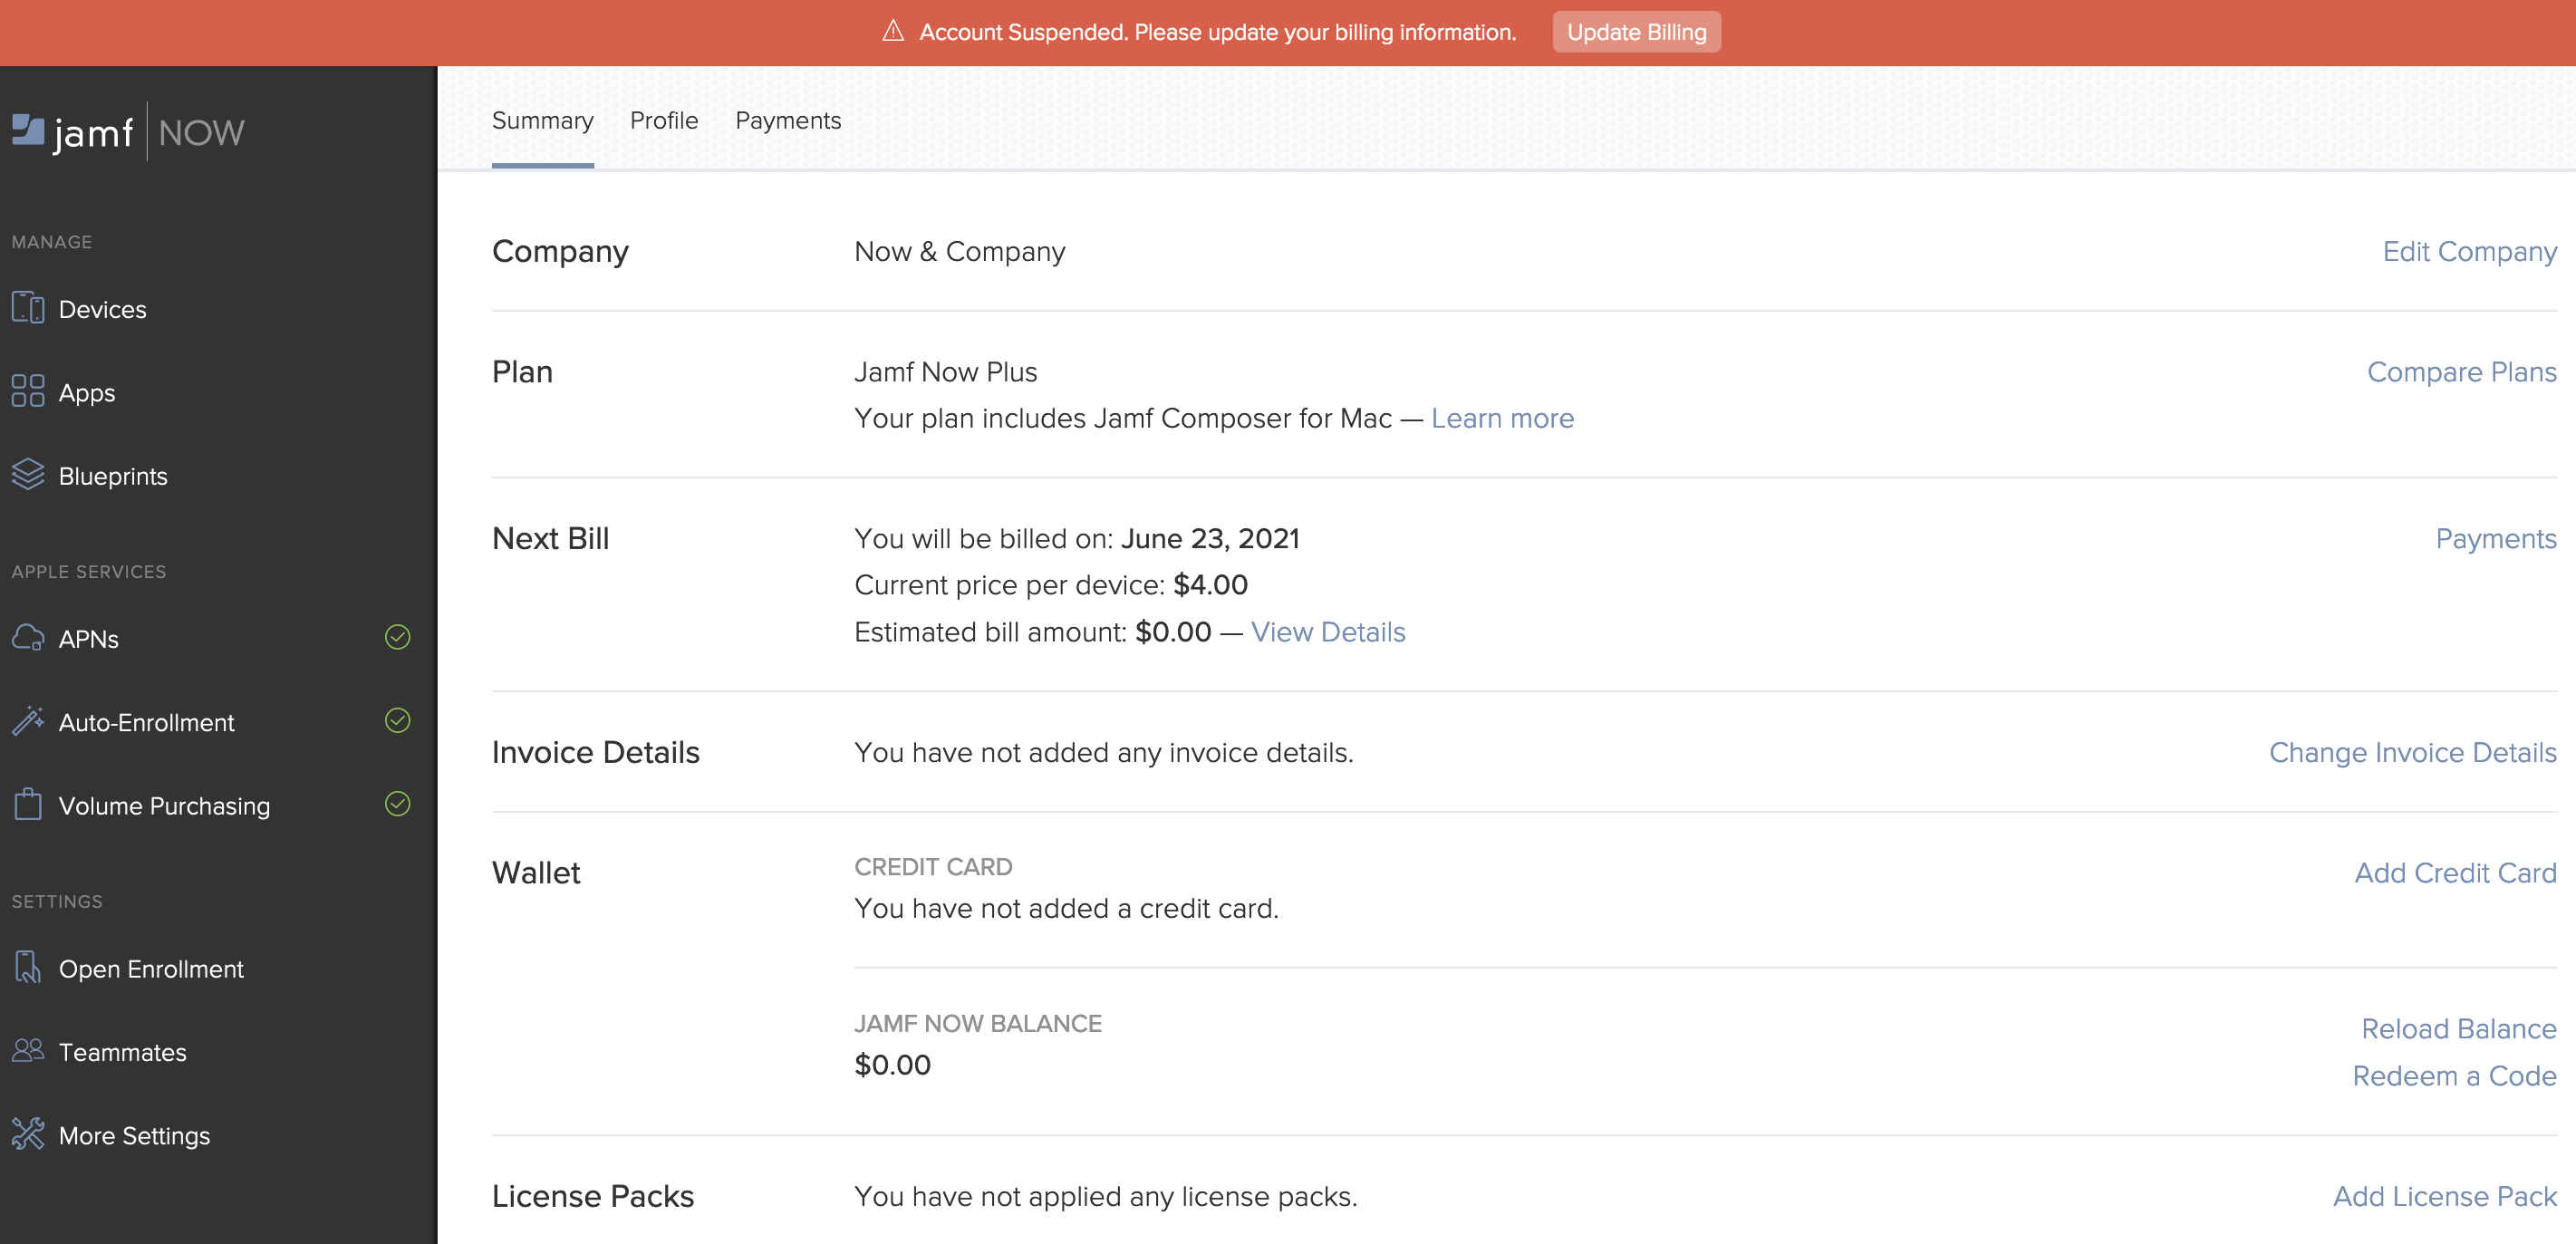 Bildschirmfoto der Account-Seite mit einer orangen Leiste oben im Bildschirm, die auf die Account-Sperrung hinweist.